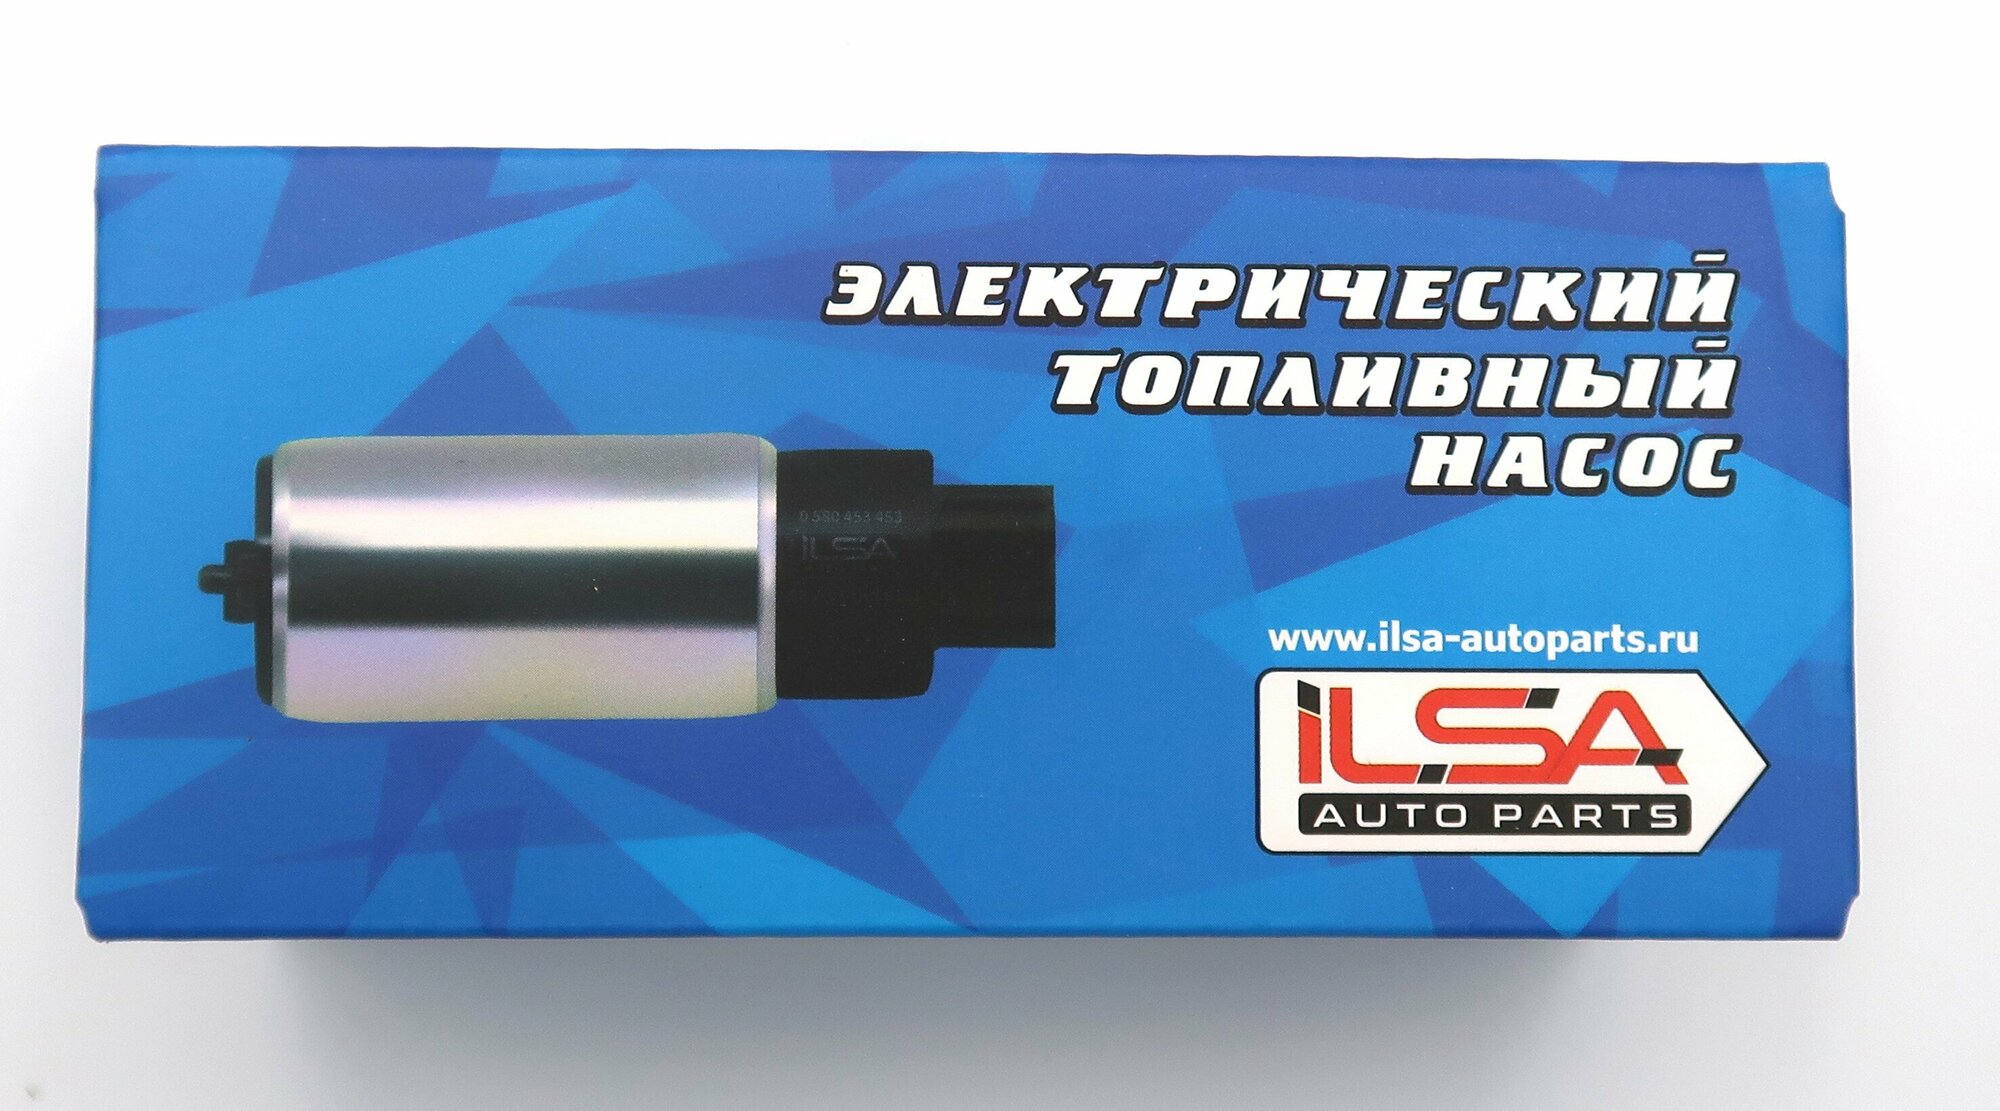 Электрический топливный насос ILSA AUTO Parts для автомобилей ВАЗ 2110-21170